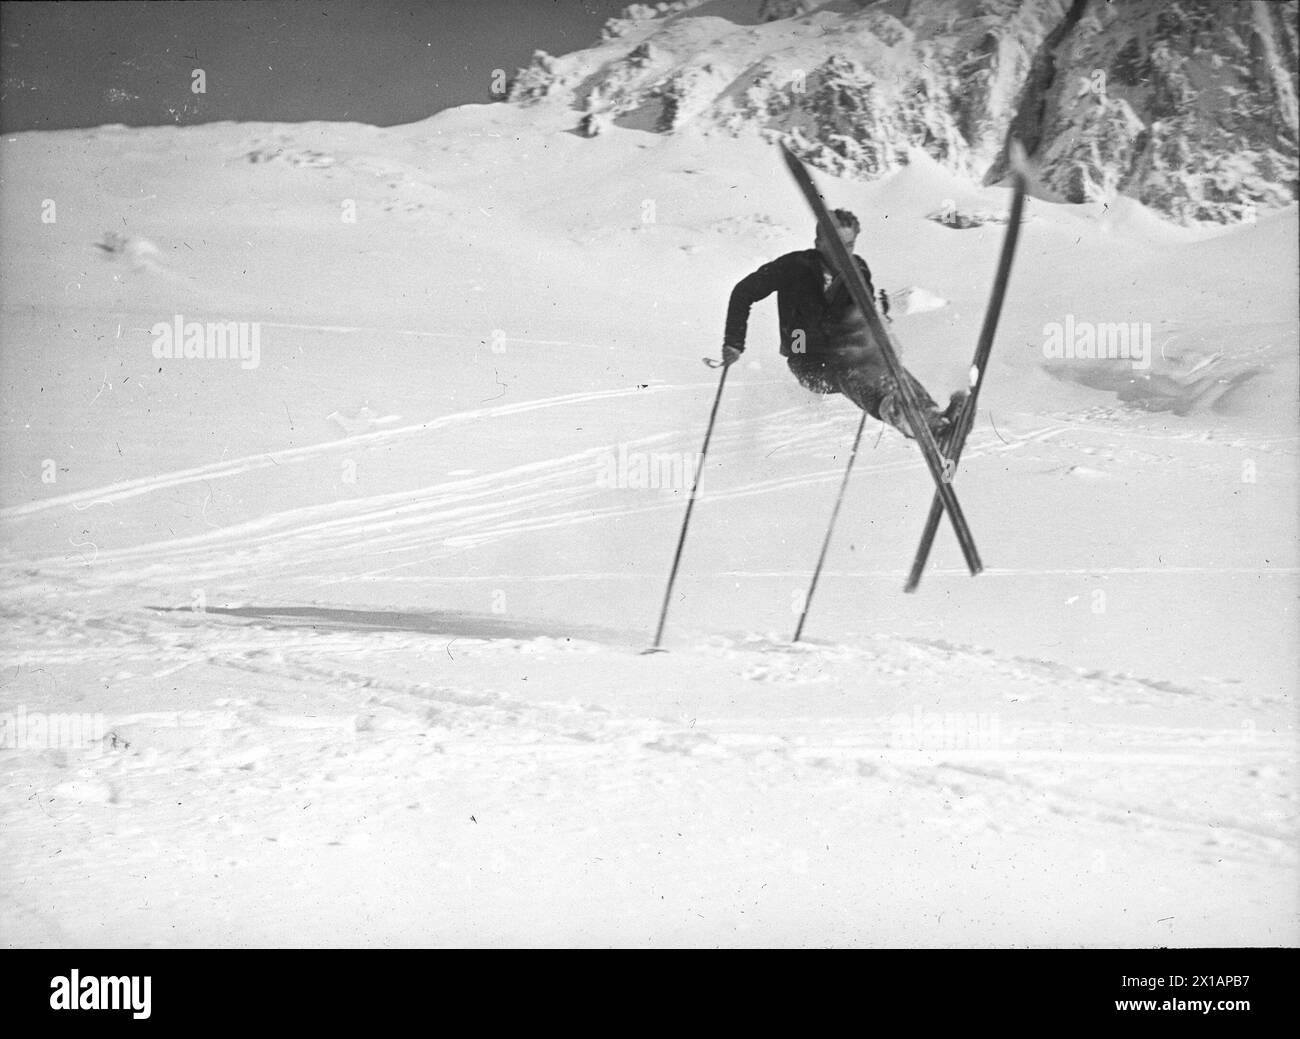 Skieur, adolescent skieur au bondissement acrobatique dans la région de Nassfeld. photographie. Photographie circa 1930., 1930 - 19300101 PD8167 - Rechteinfo : droits gérés (RM) Banque D'Images